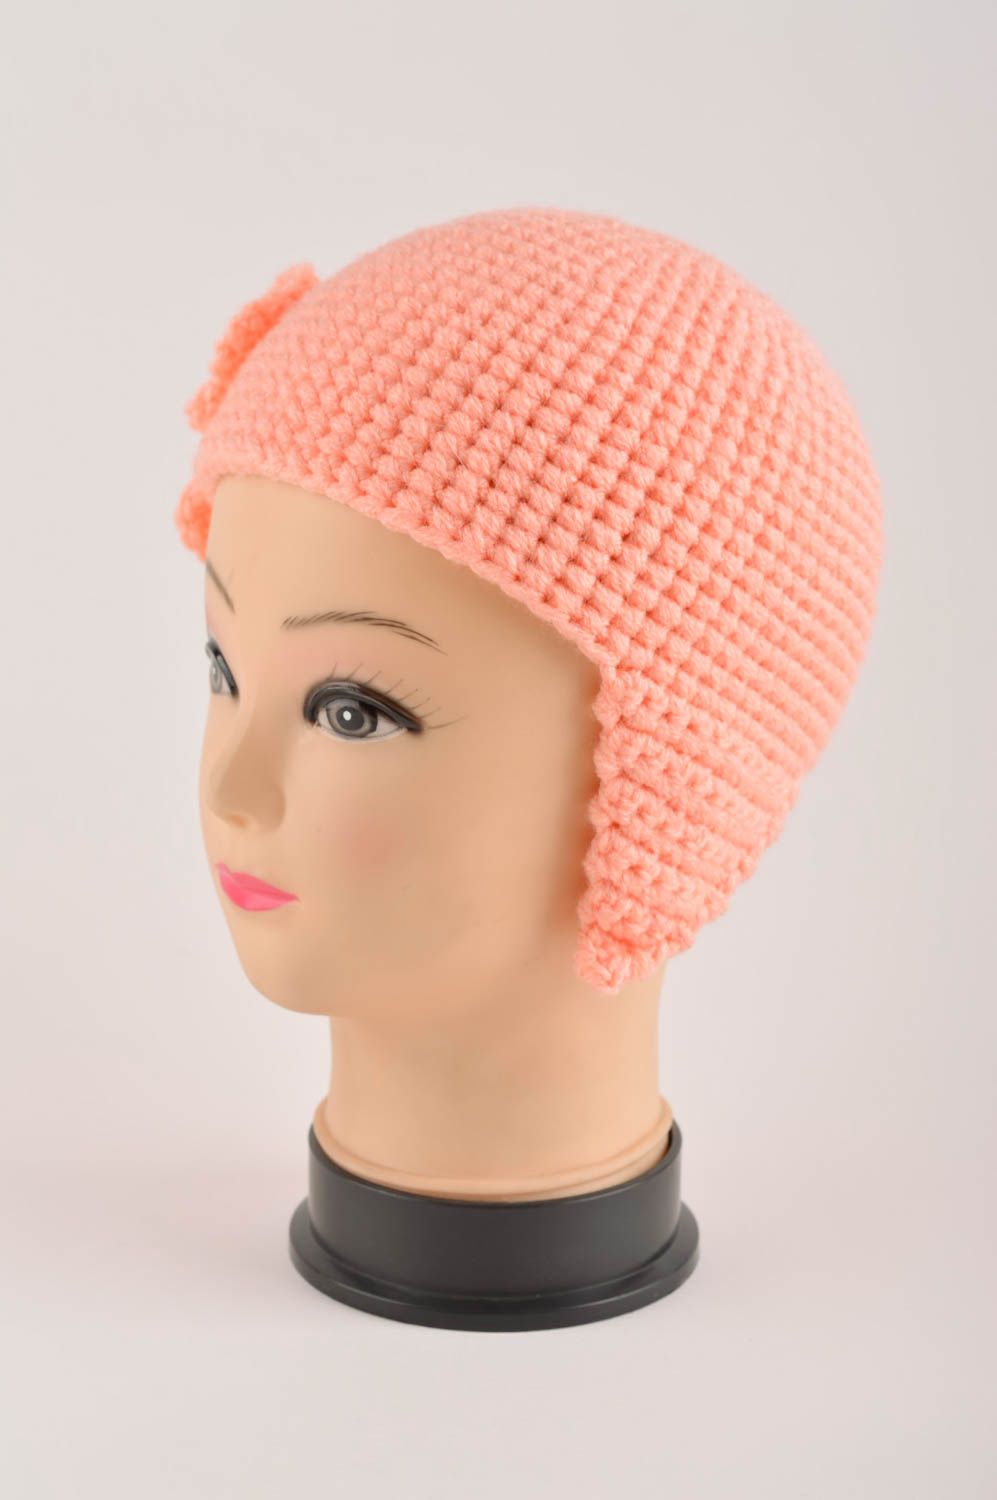 Handmade hat for girls designer hat warm hat winter woolen hat for children photo 4